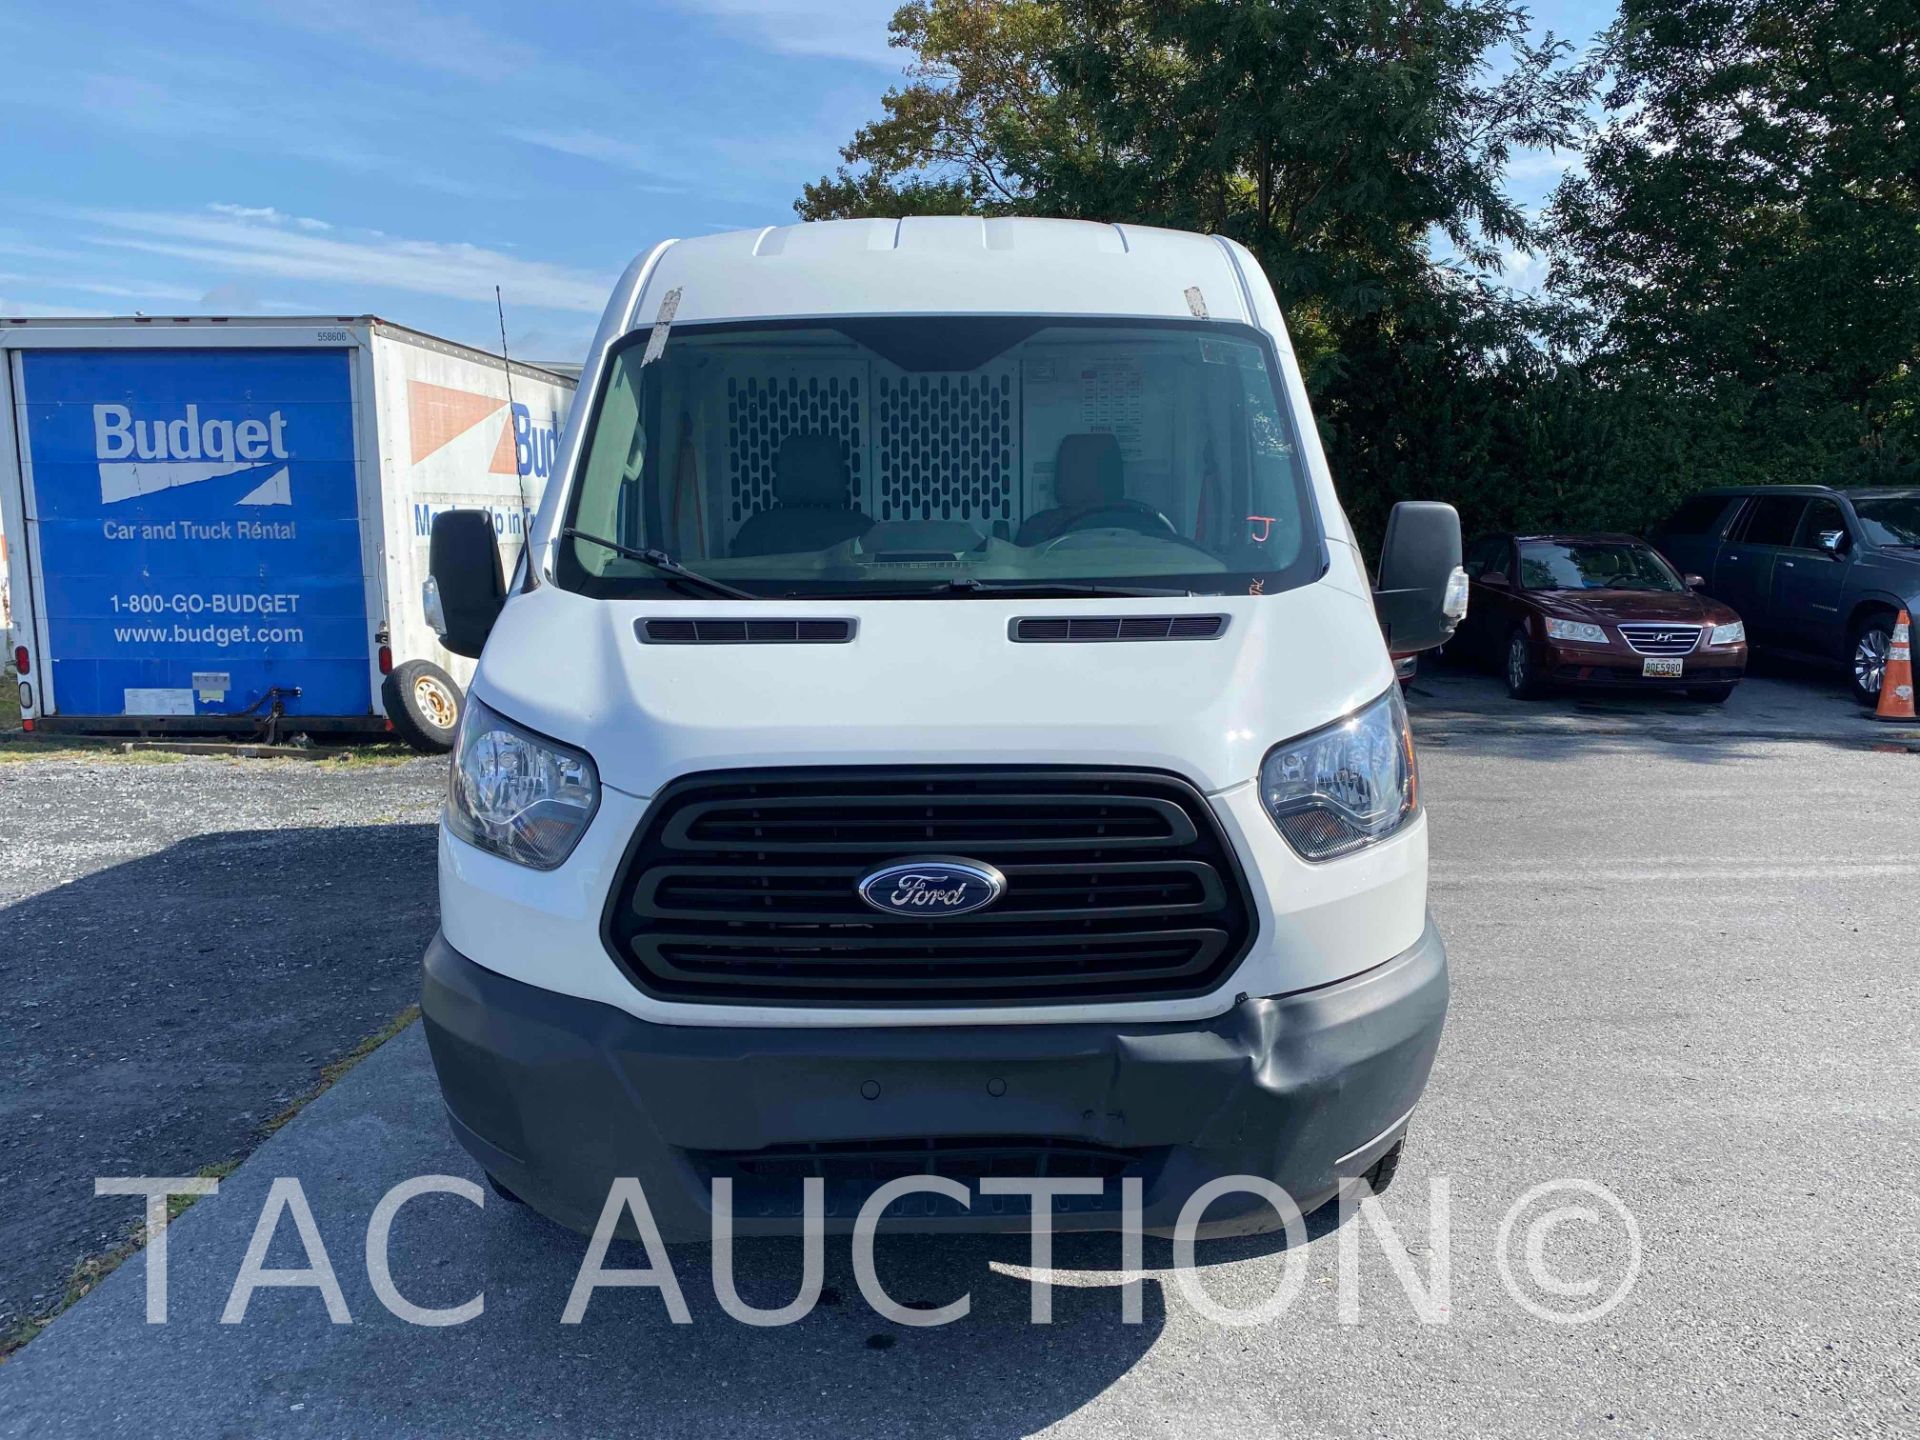 2019 Ford Transit 150 Cargo Van - Image 2 of 51